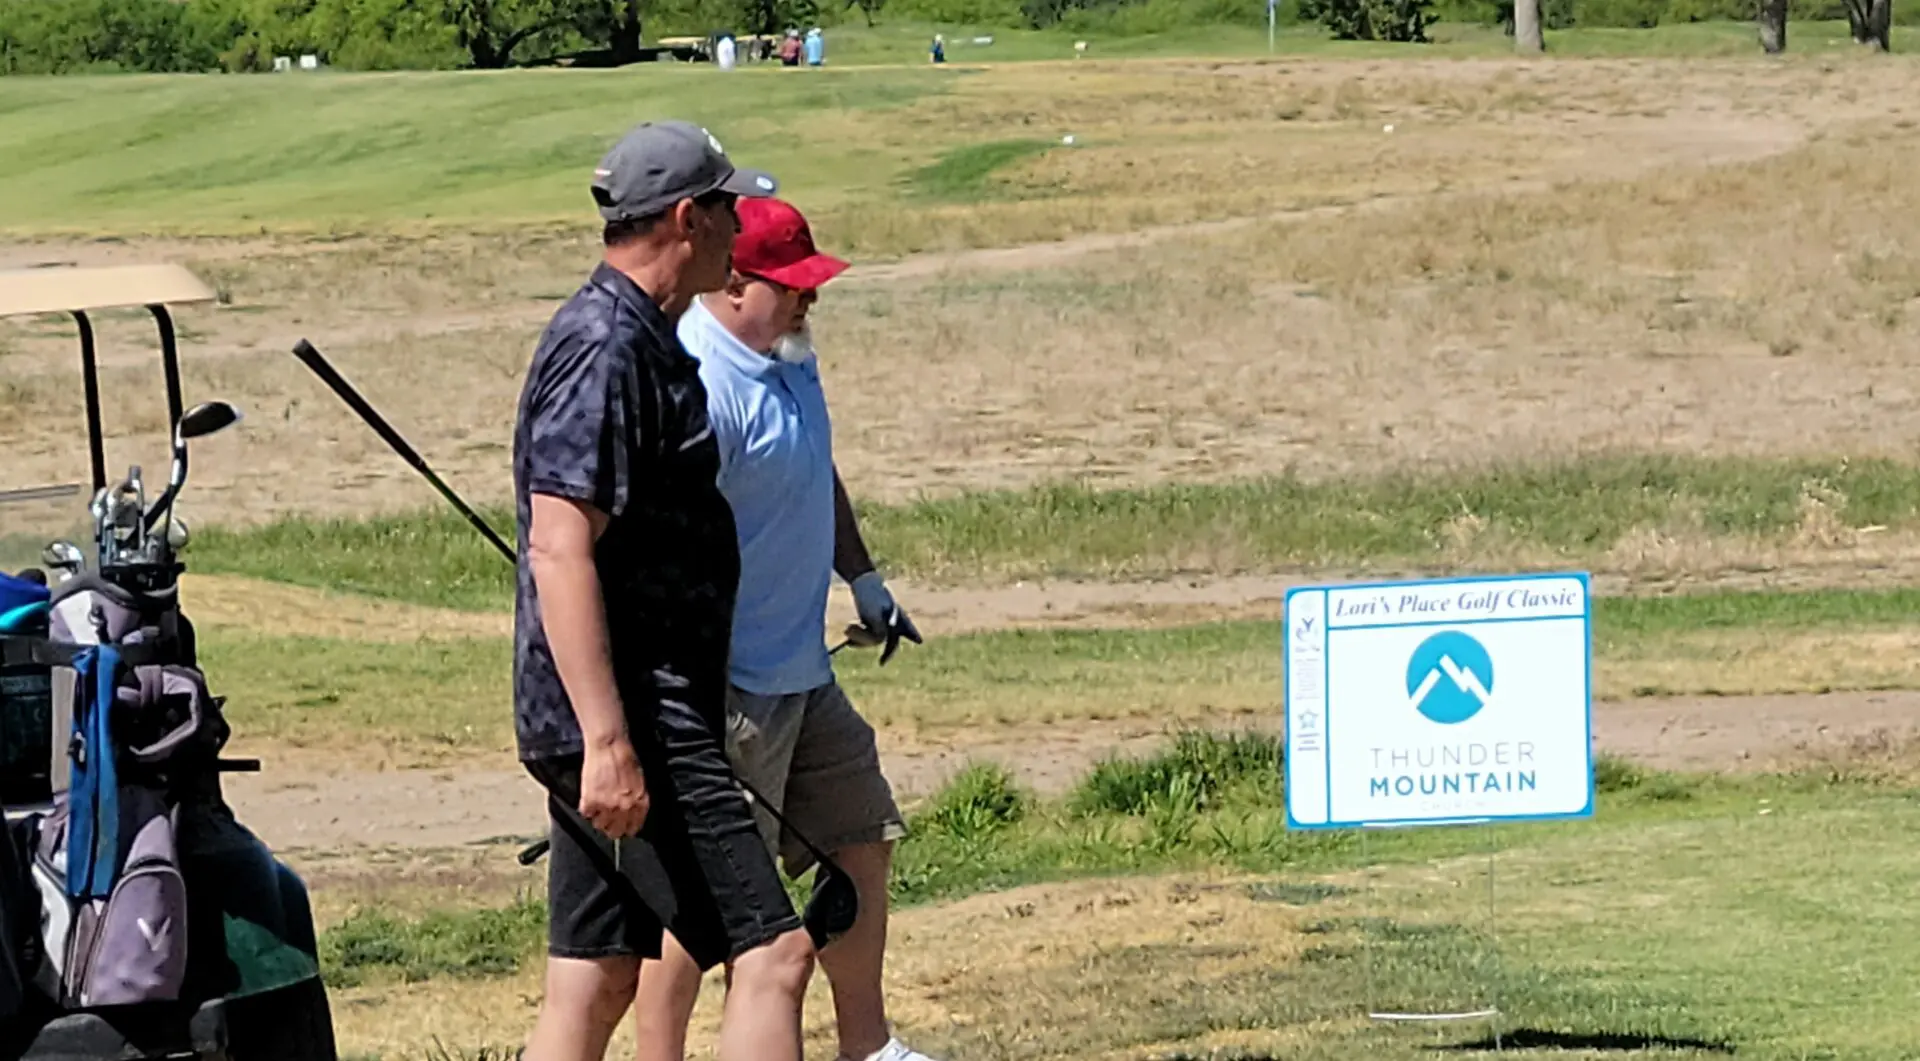 Two men walking across a field holding golf clubs.